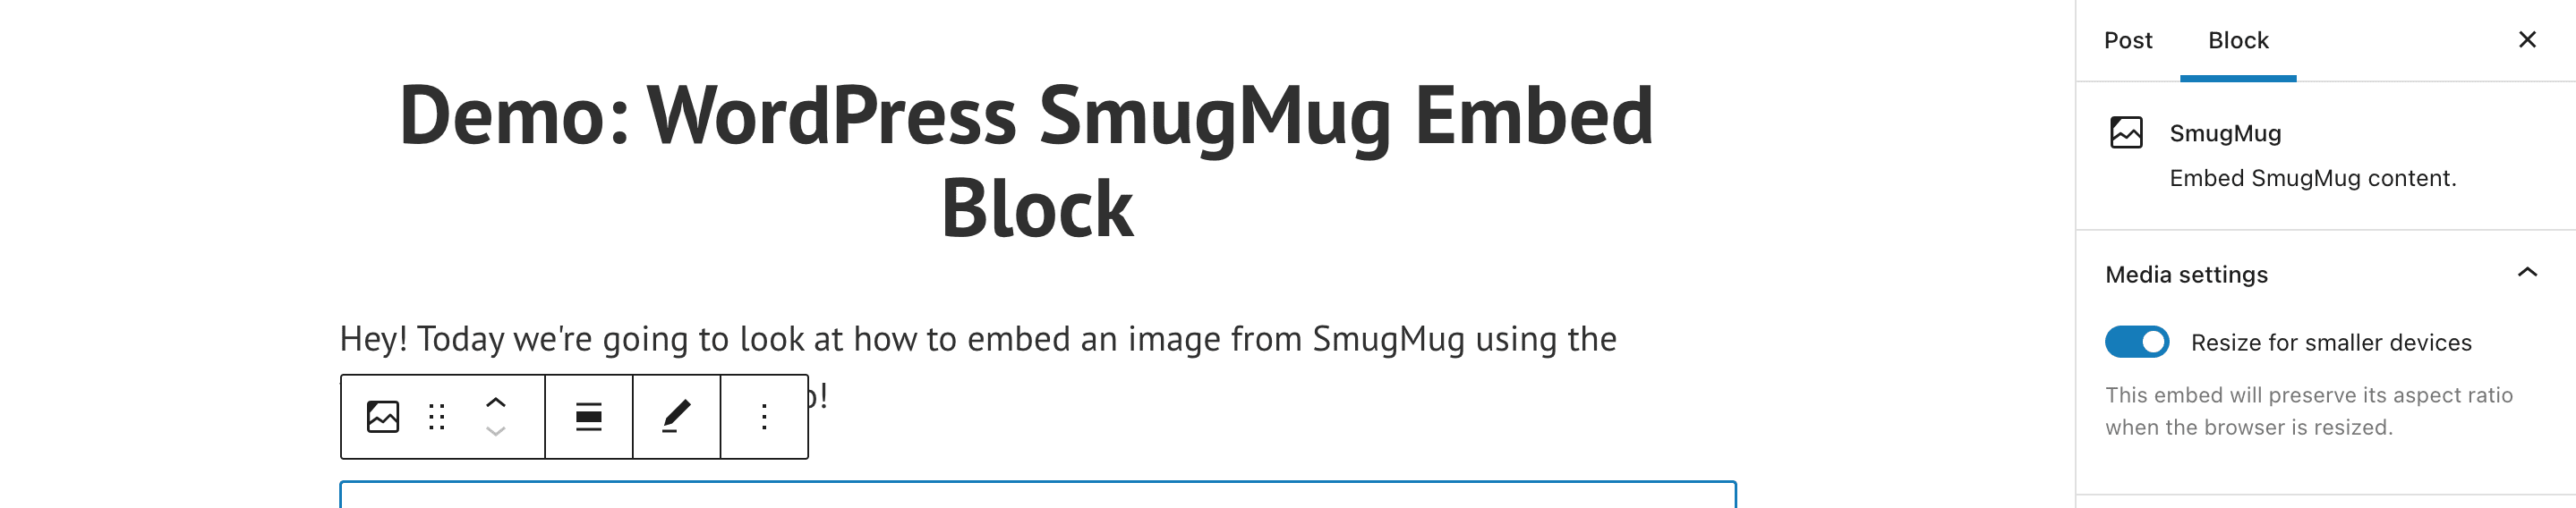 SmugMug 17